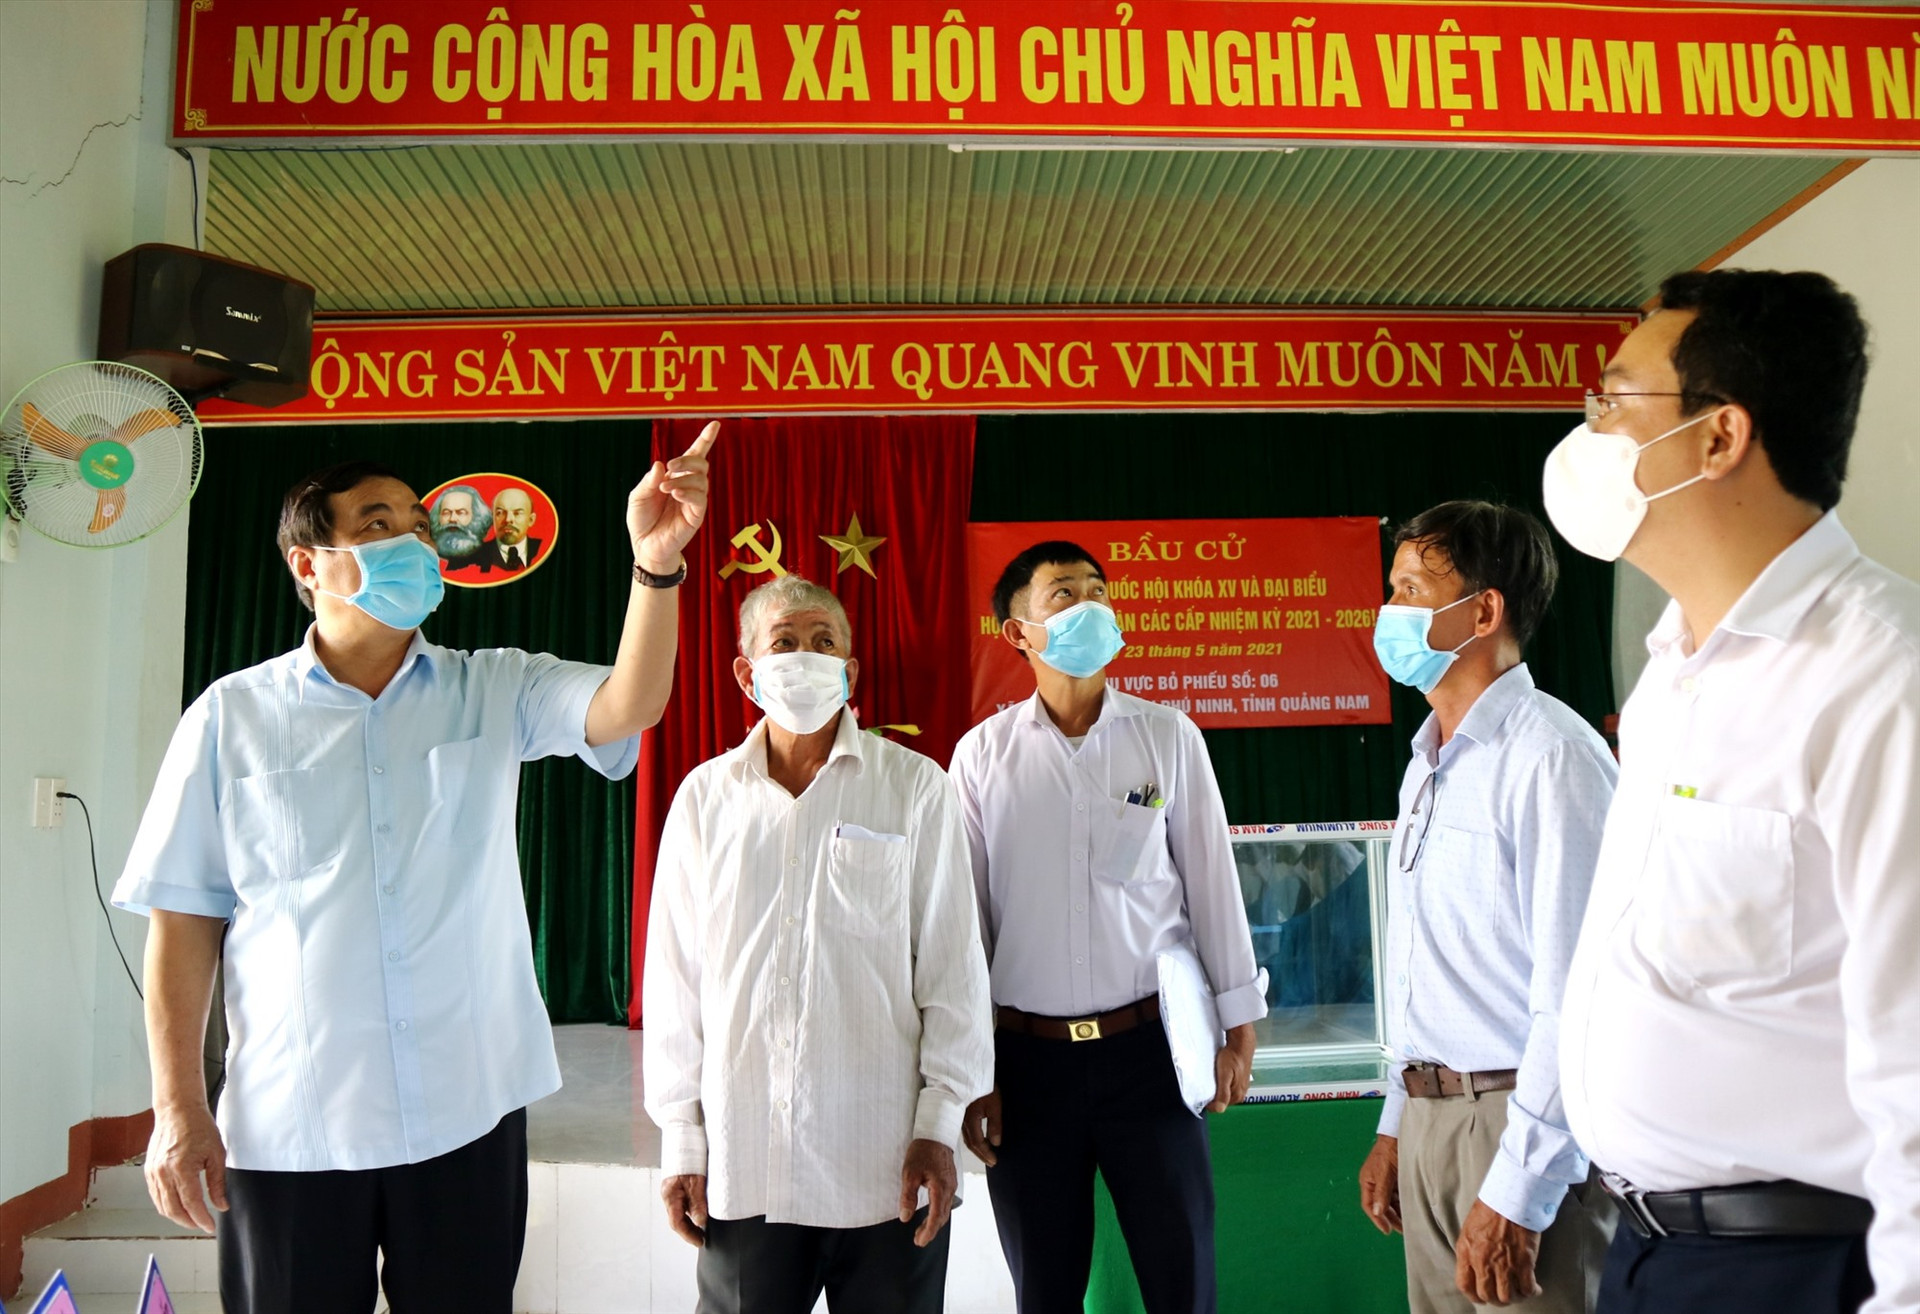 Bí thư Tỉnh ủy Phan Việt Cường lưu ý bên cạnh cần tổng dọn vệ sinh sạch sẽ, cần đảm bảo an toàn phòng chống dịch Covid-19 tại các điểm bỏ phiếu. Ảnh: A.N